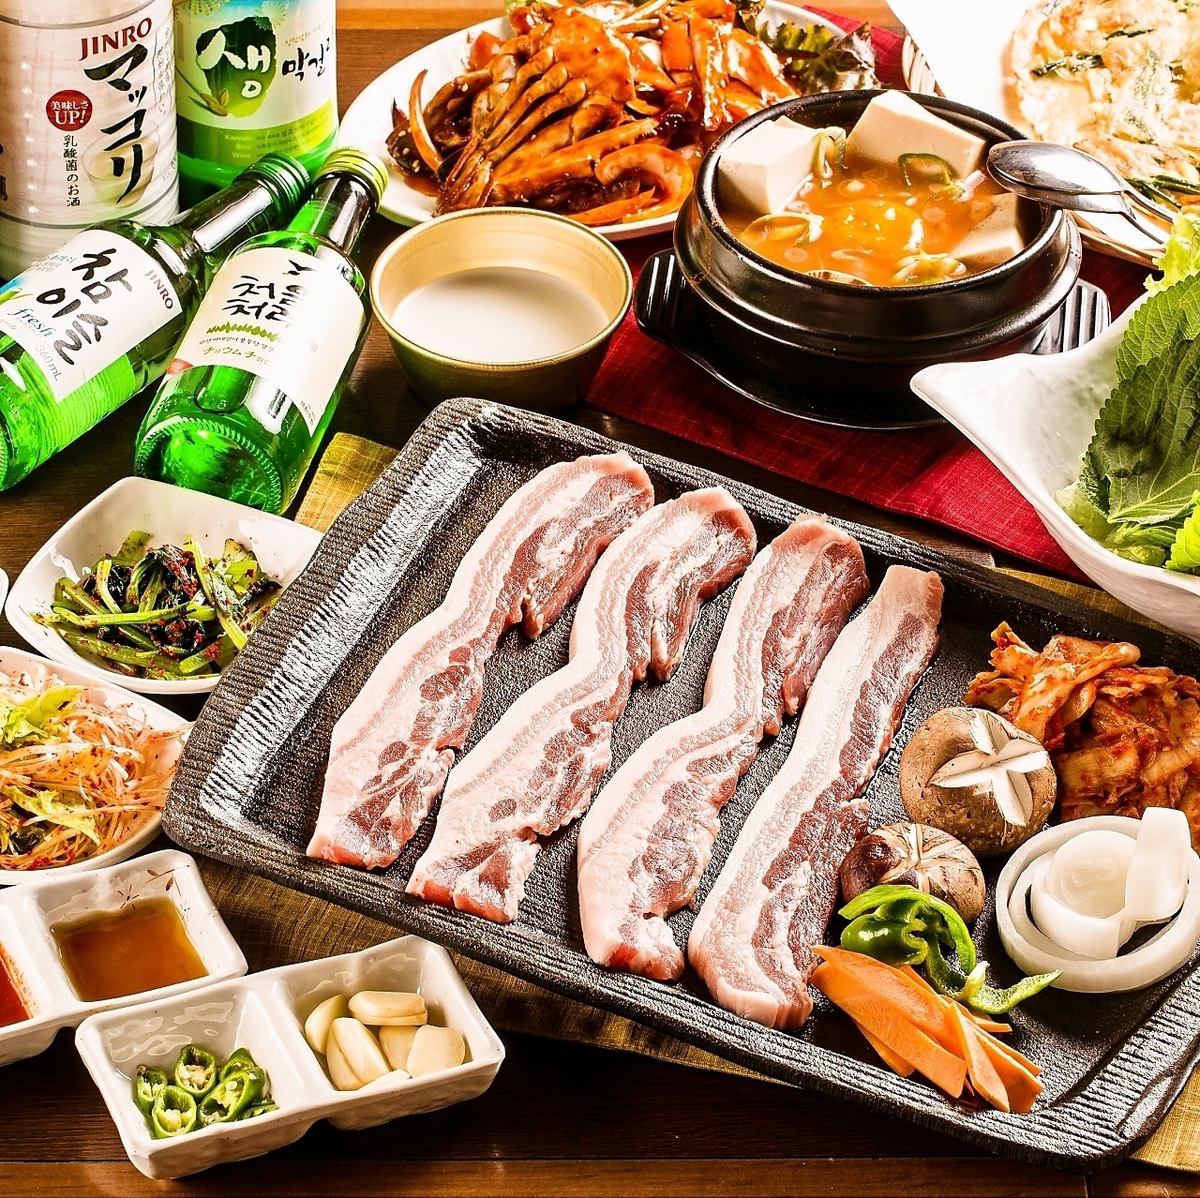 韩国人气餐厅“Kin-chan”2小时<无限畅饮>五花肉套餐3,500日元